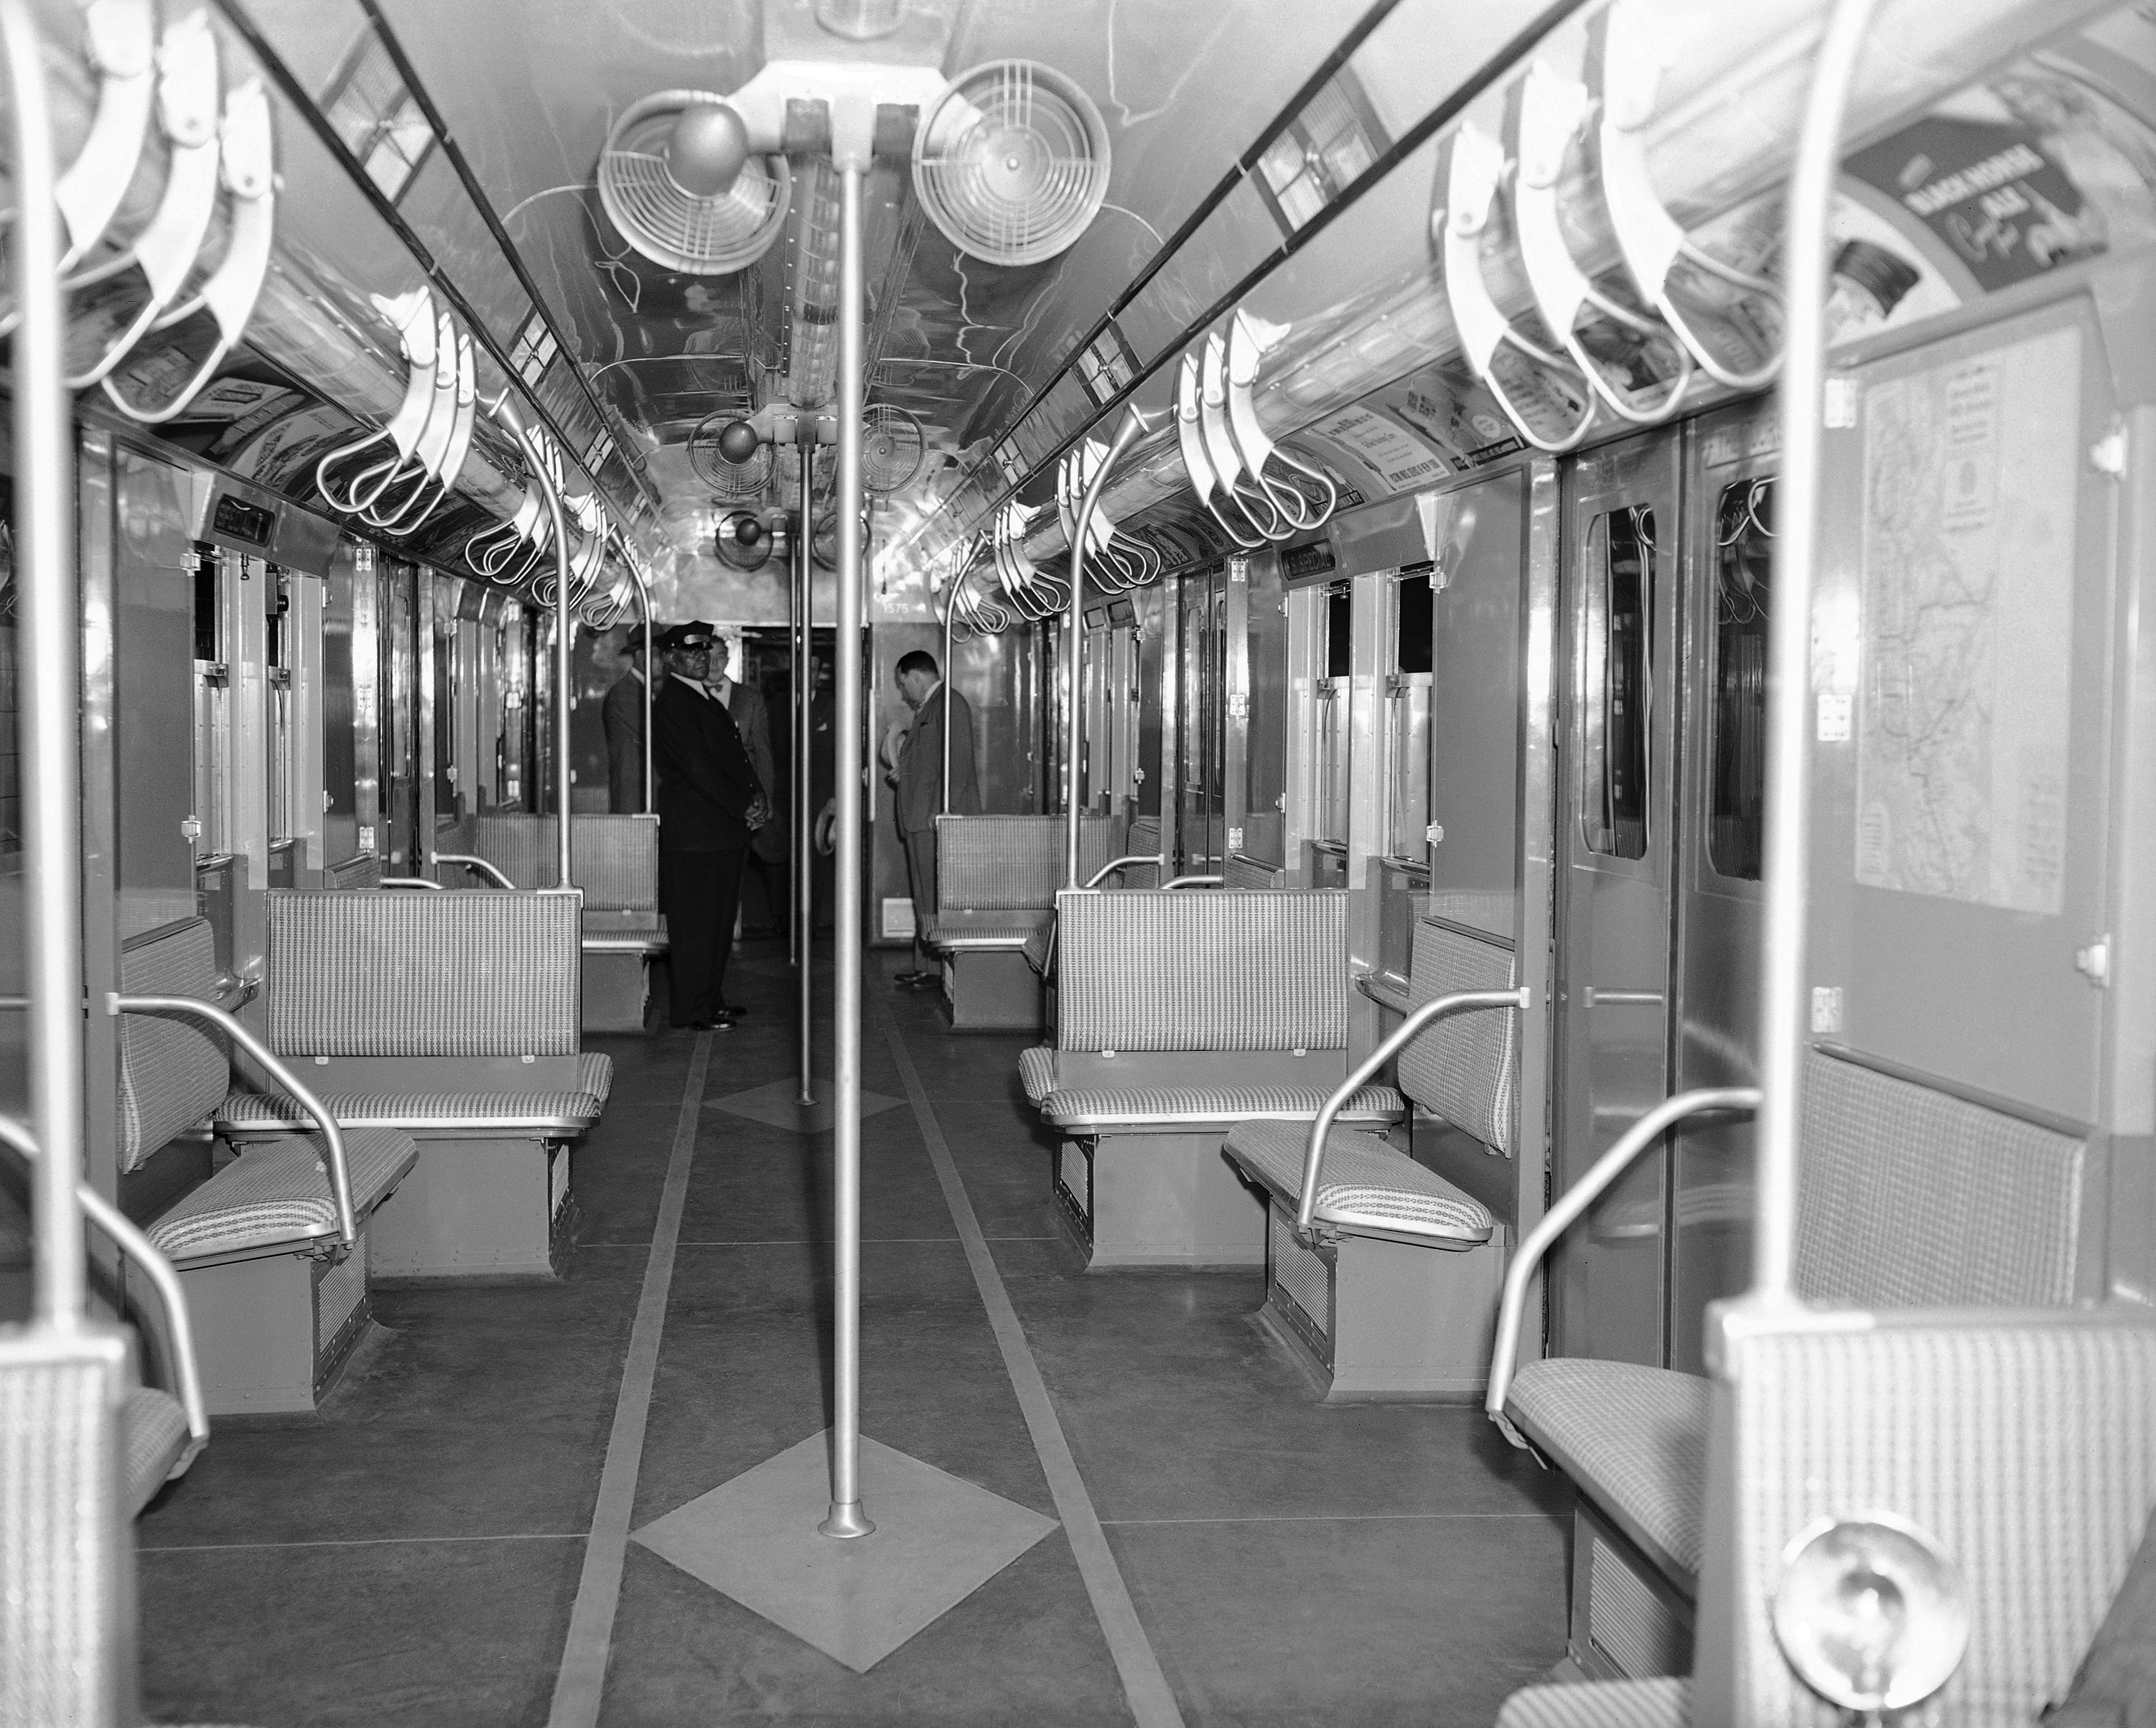 1906 New York SUBWAY TRAIN INTERIOR PHOTO 133-w 